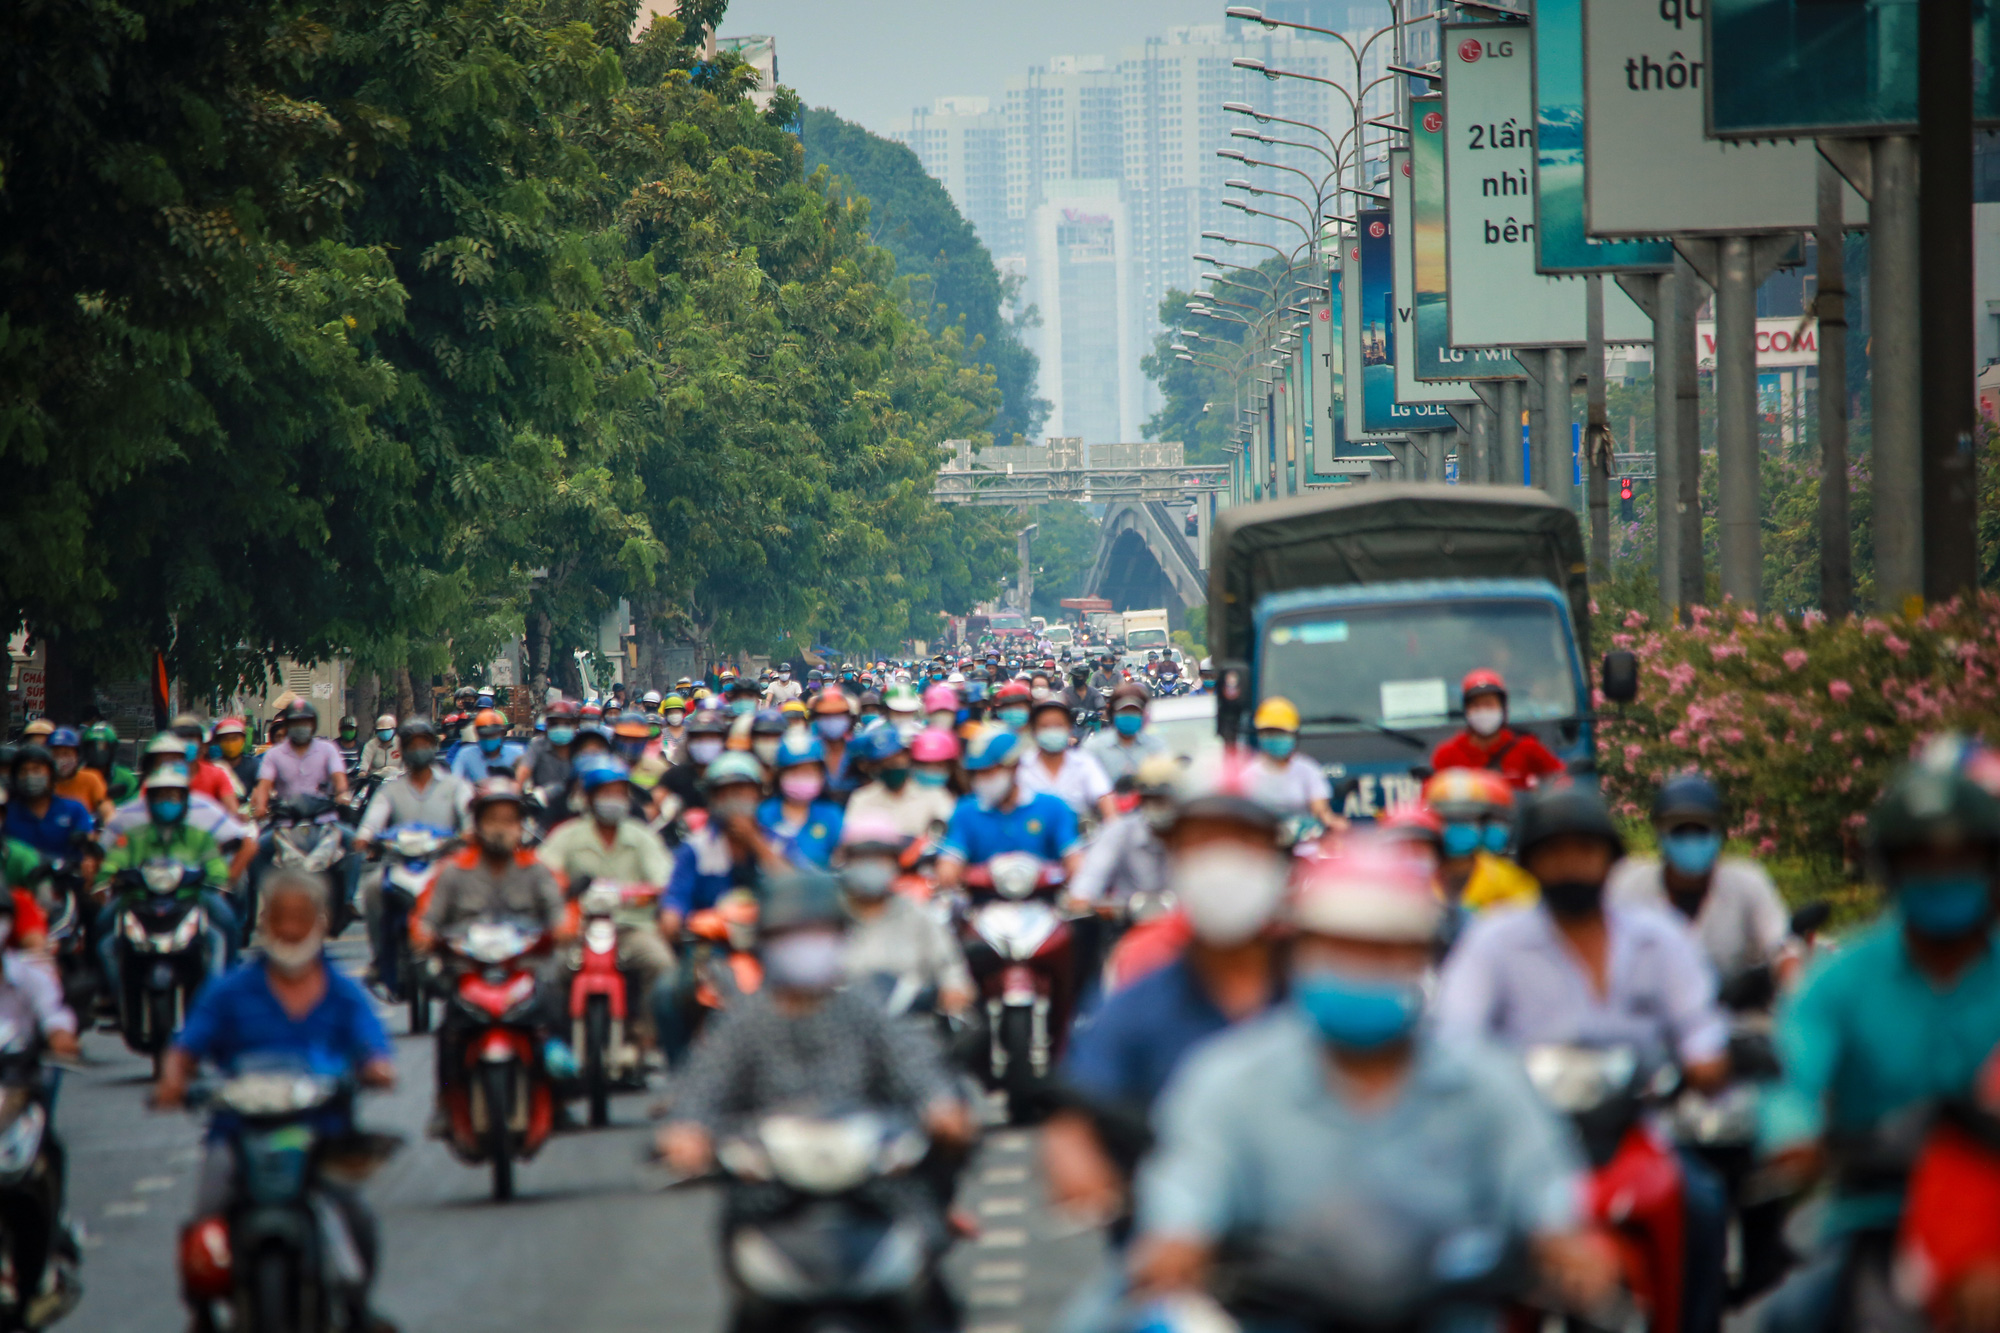 Sài Gòn đông đúc khi sắp kết thúc đợt cách ly toàn xã hội 14 ngày - Ảnh 1.